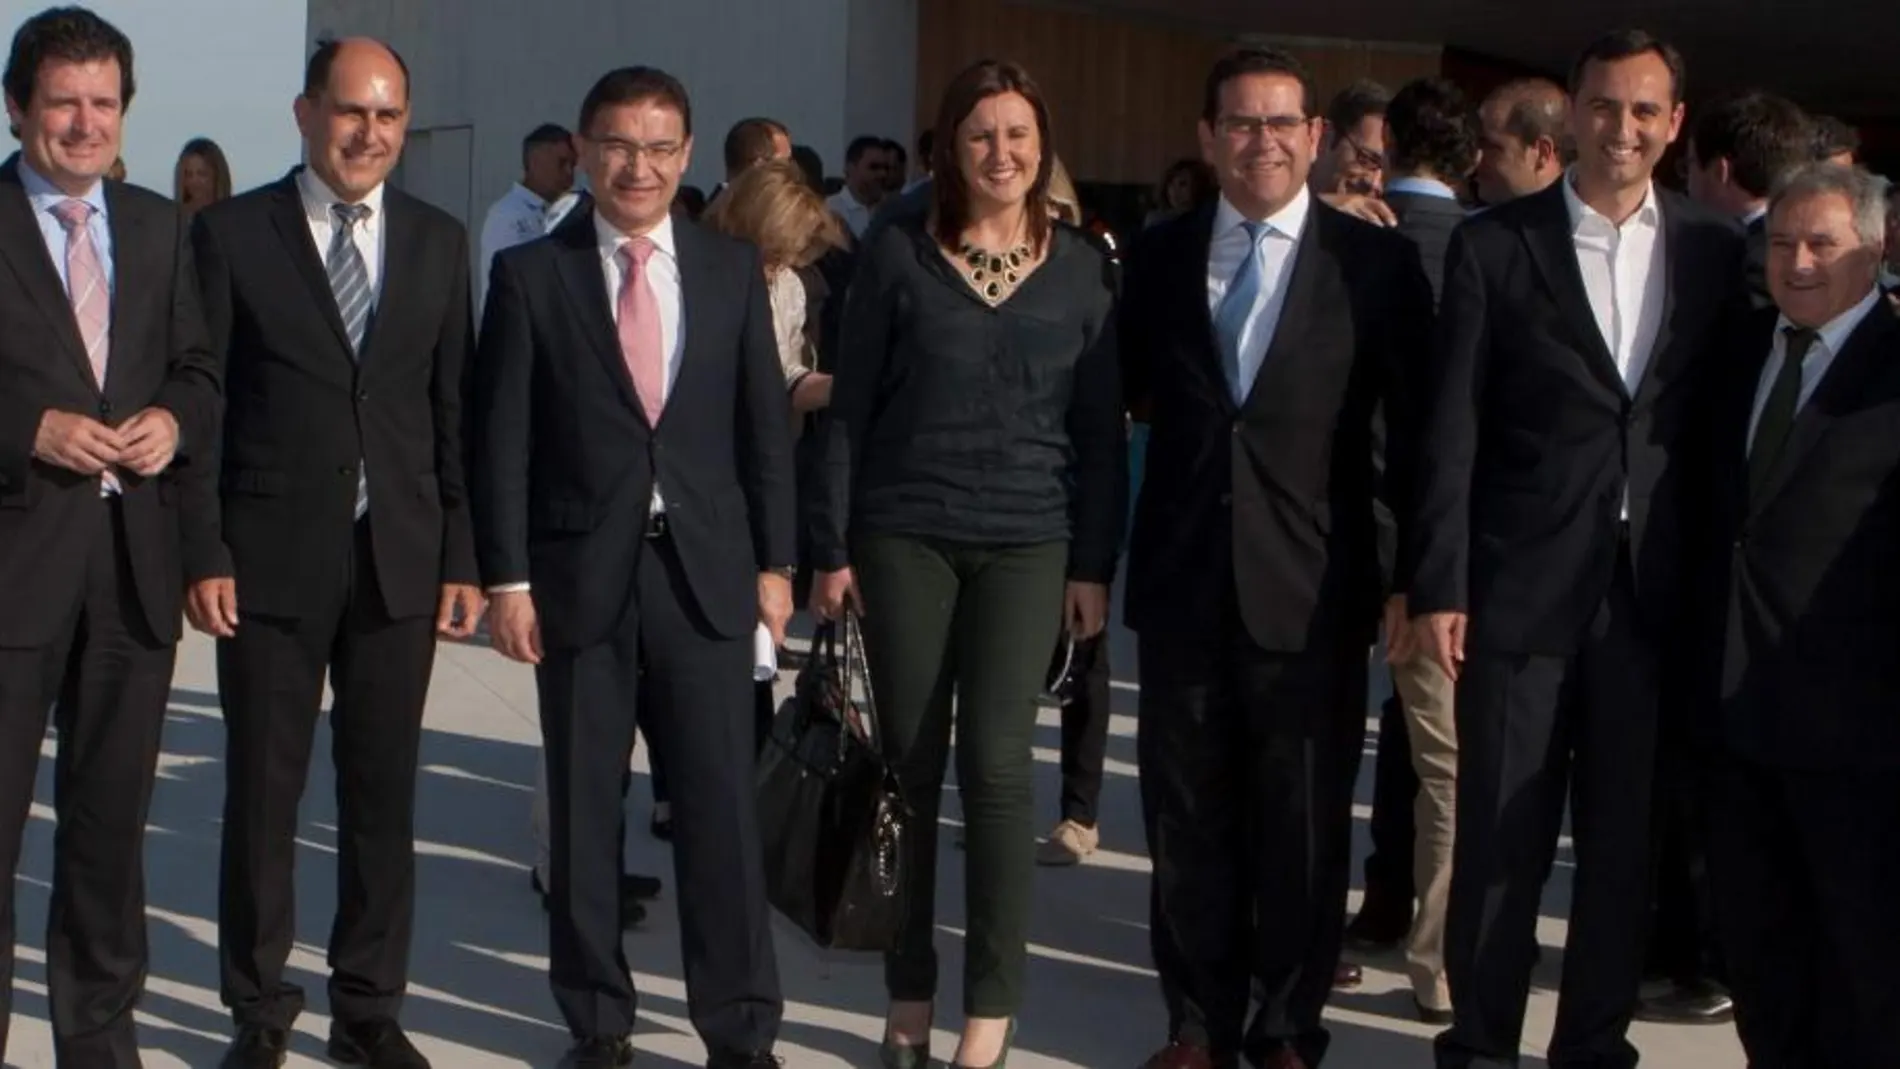 El alcalde junto a Císcar, Castellano, Catalá, Bellver, Sánchez y Rus